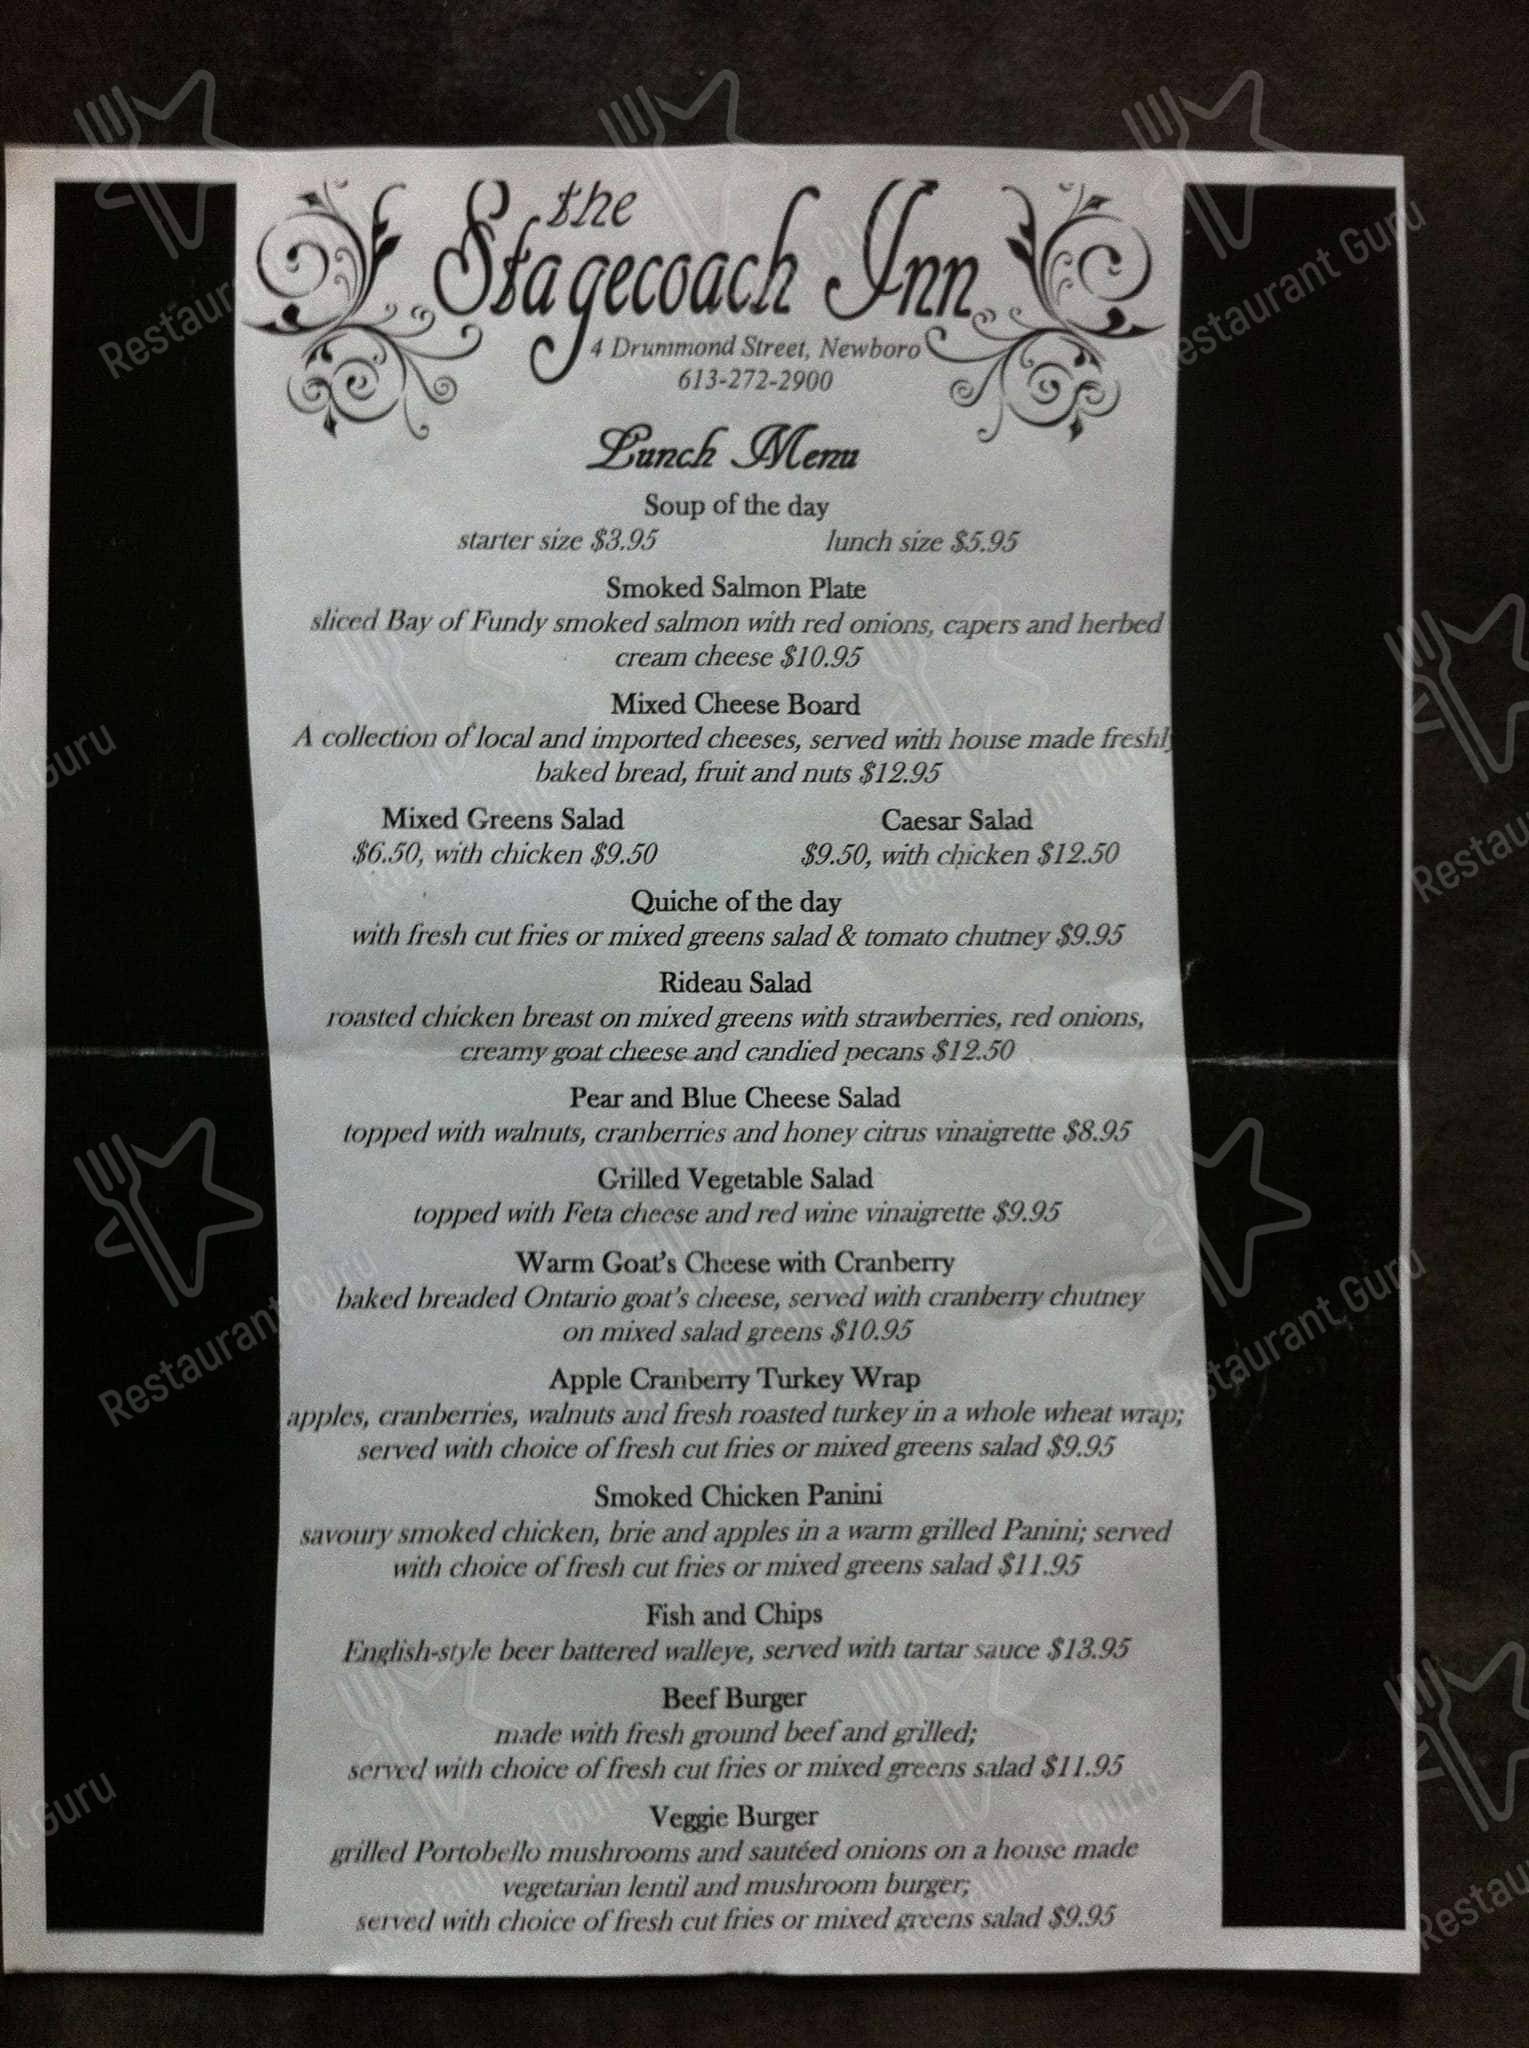 The Stagecoach Inn menu